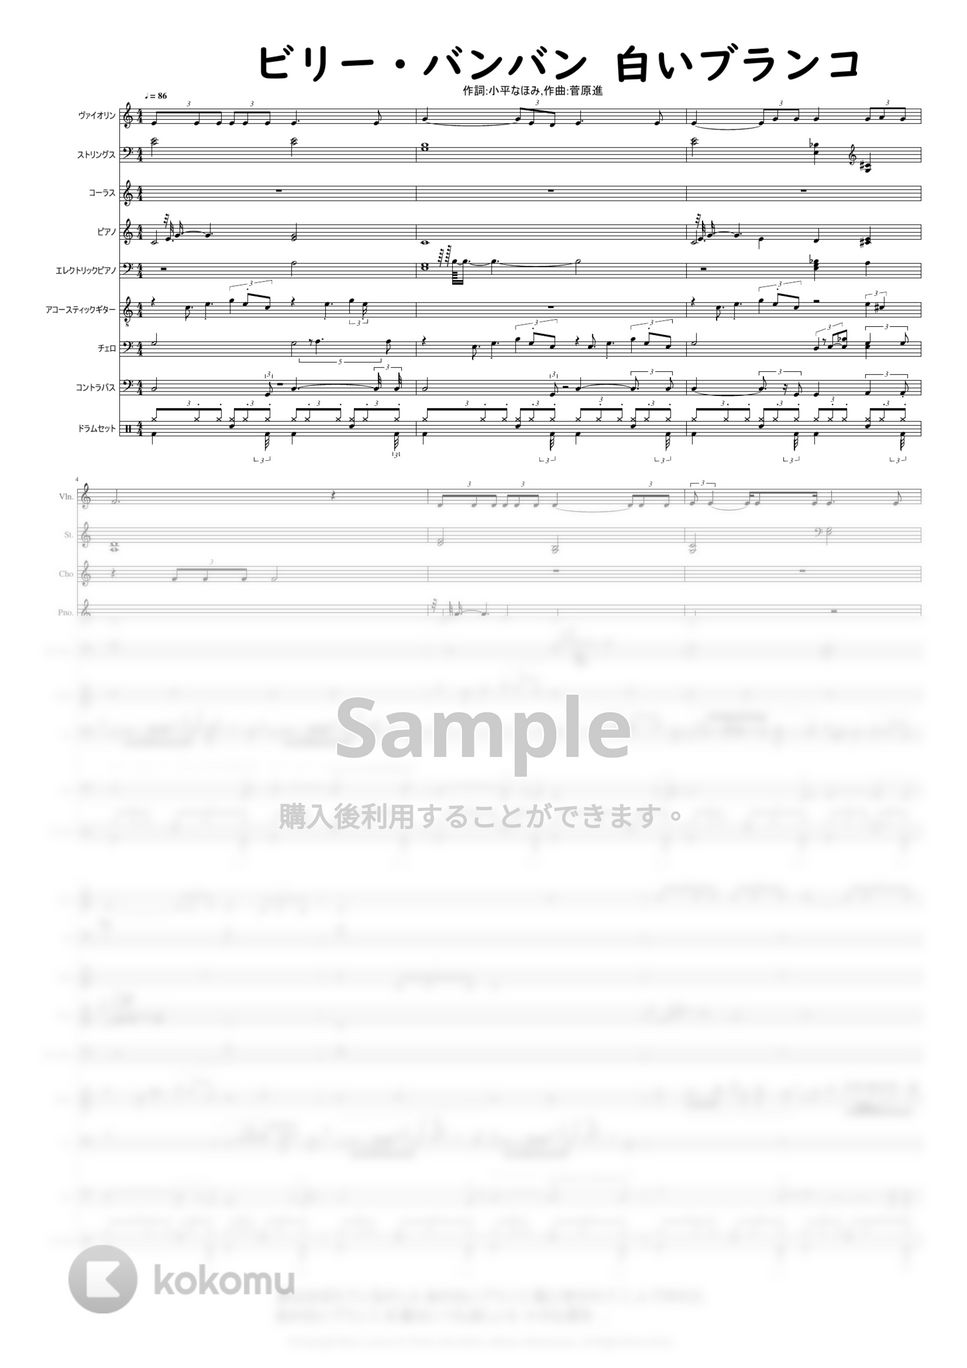 ビリー・バンバン  作詞:小平なほみ,作曲:菅原進 - 白いブランコ by @MitsuruMinamiyama